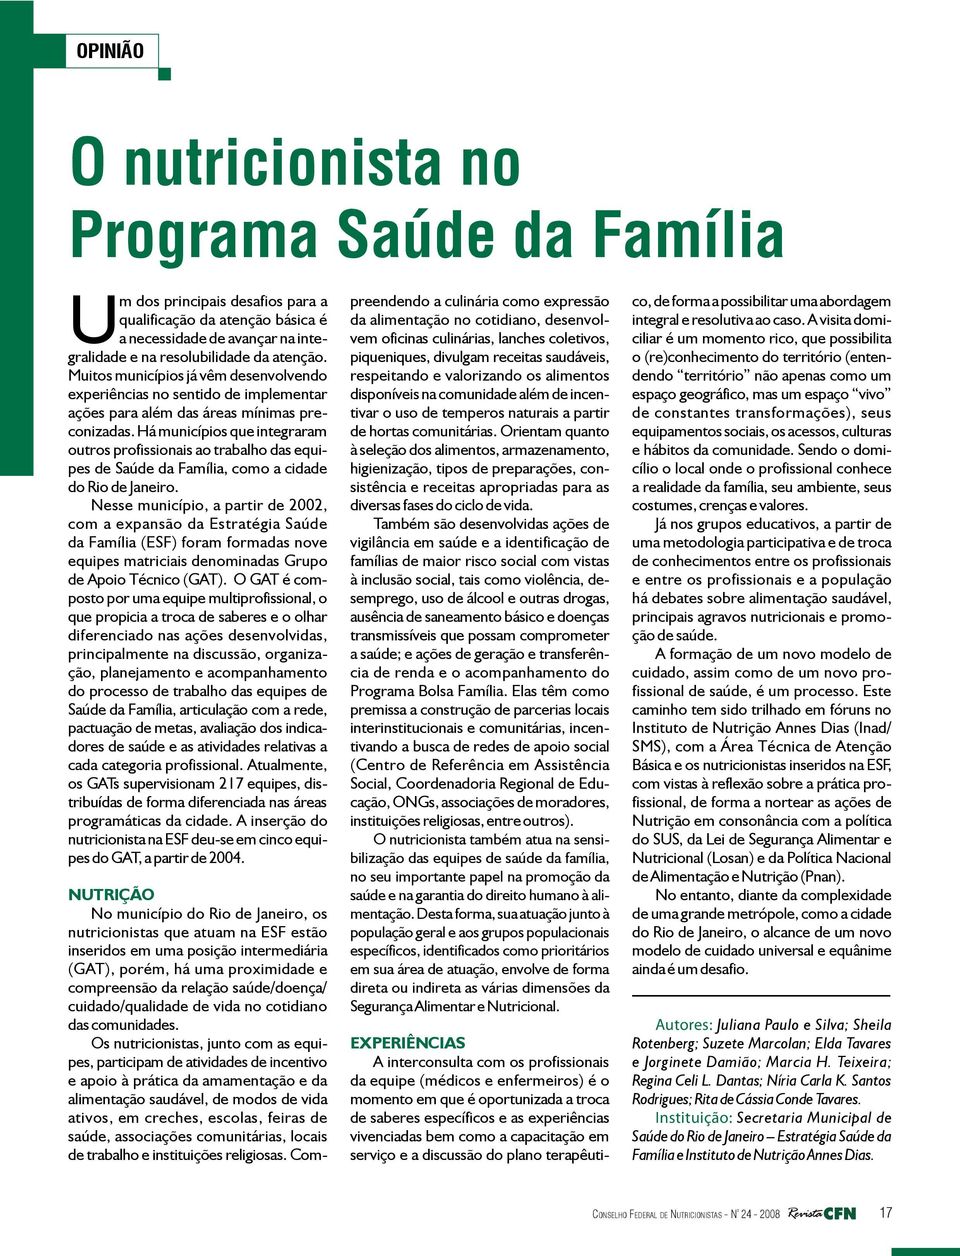 Há municípios que integraram outros profissionais ao trabalho das equipes de Saúde da Família, como a cidade do Rio de Janeiro.